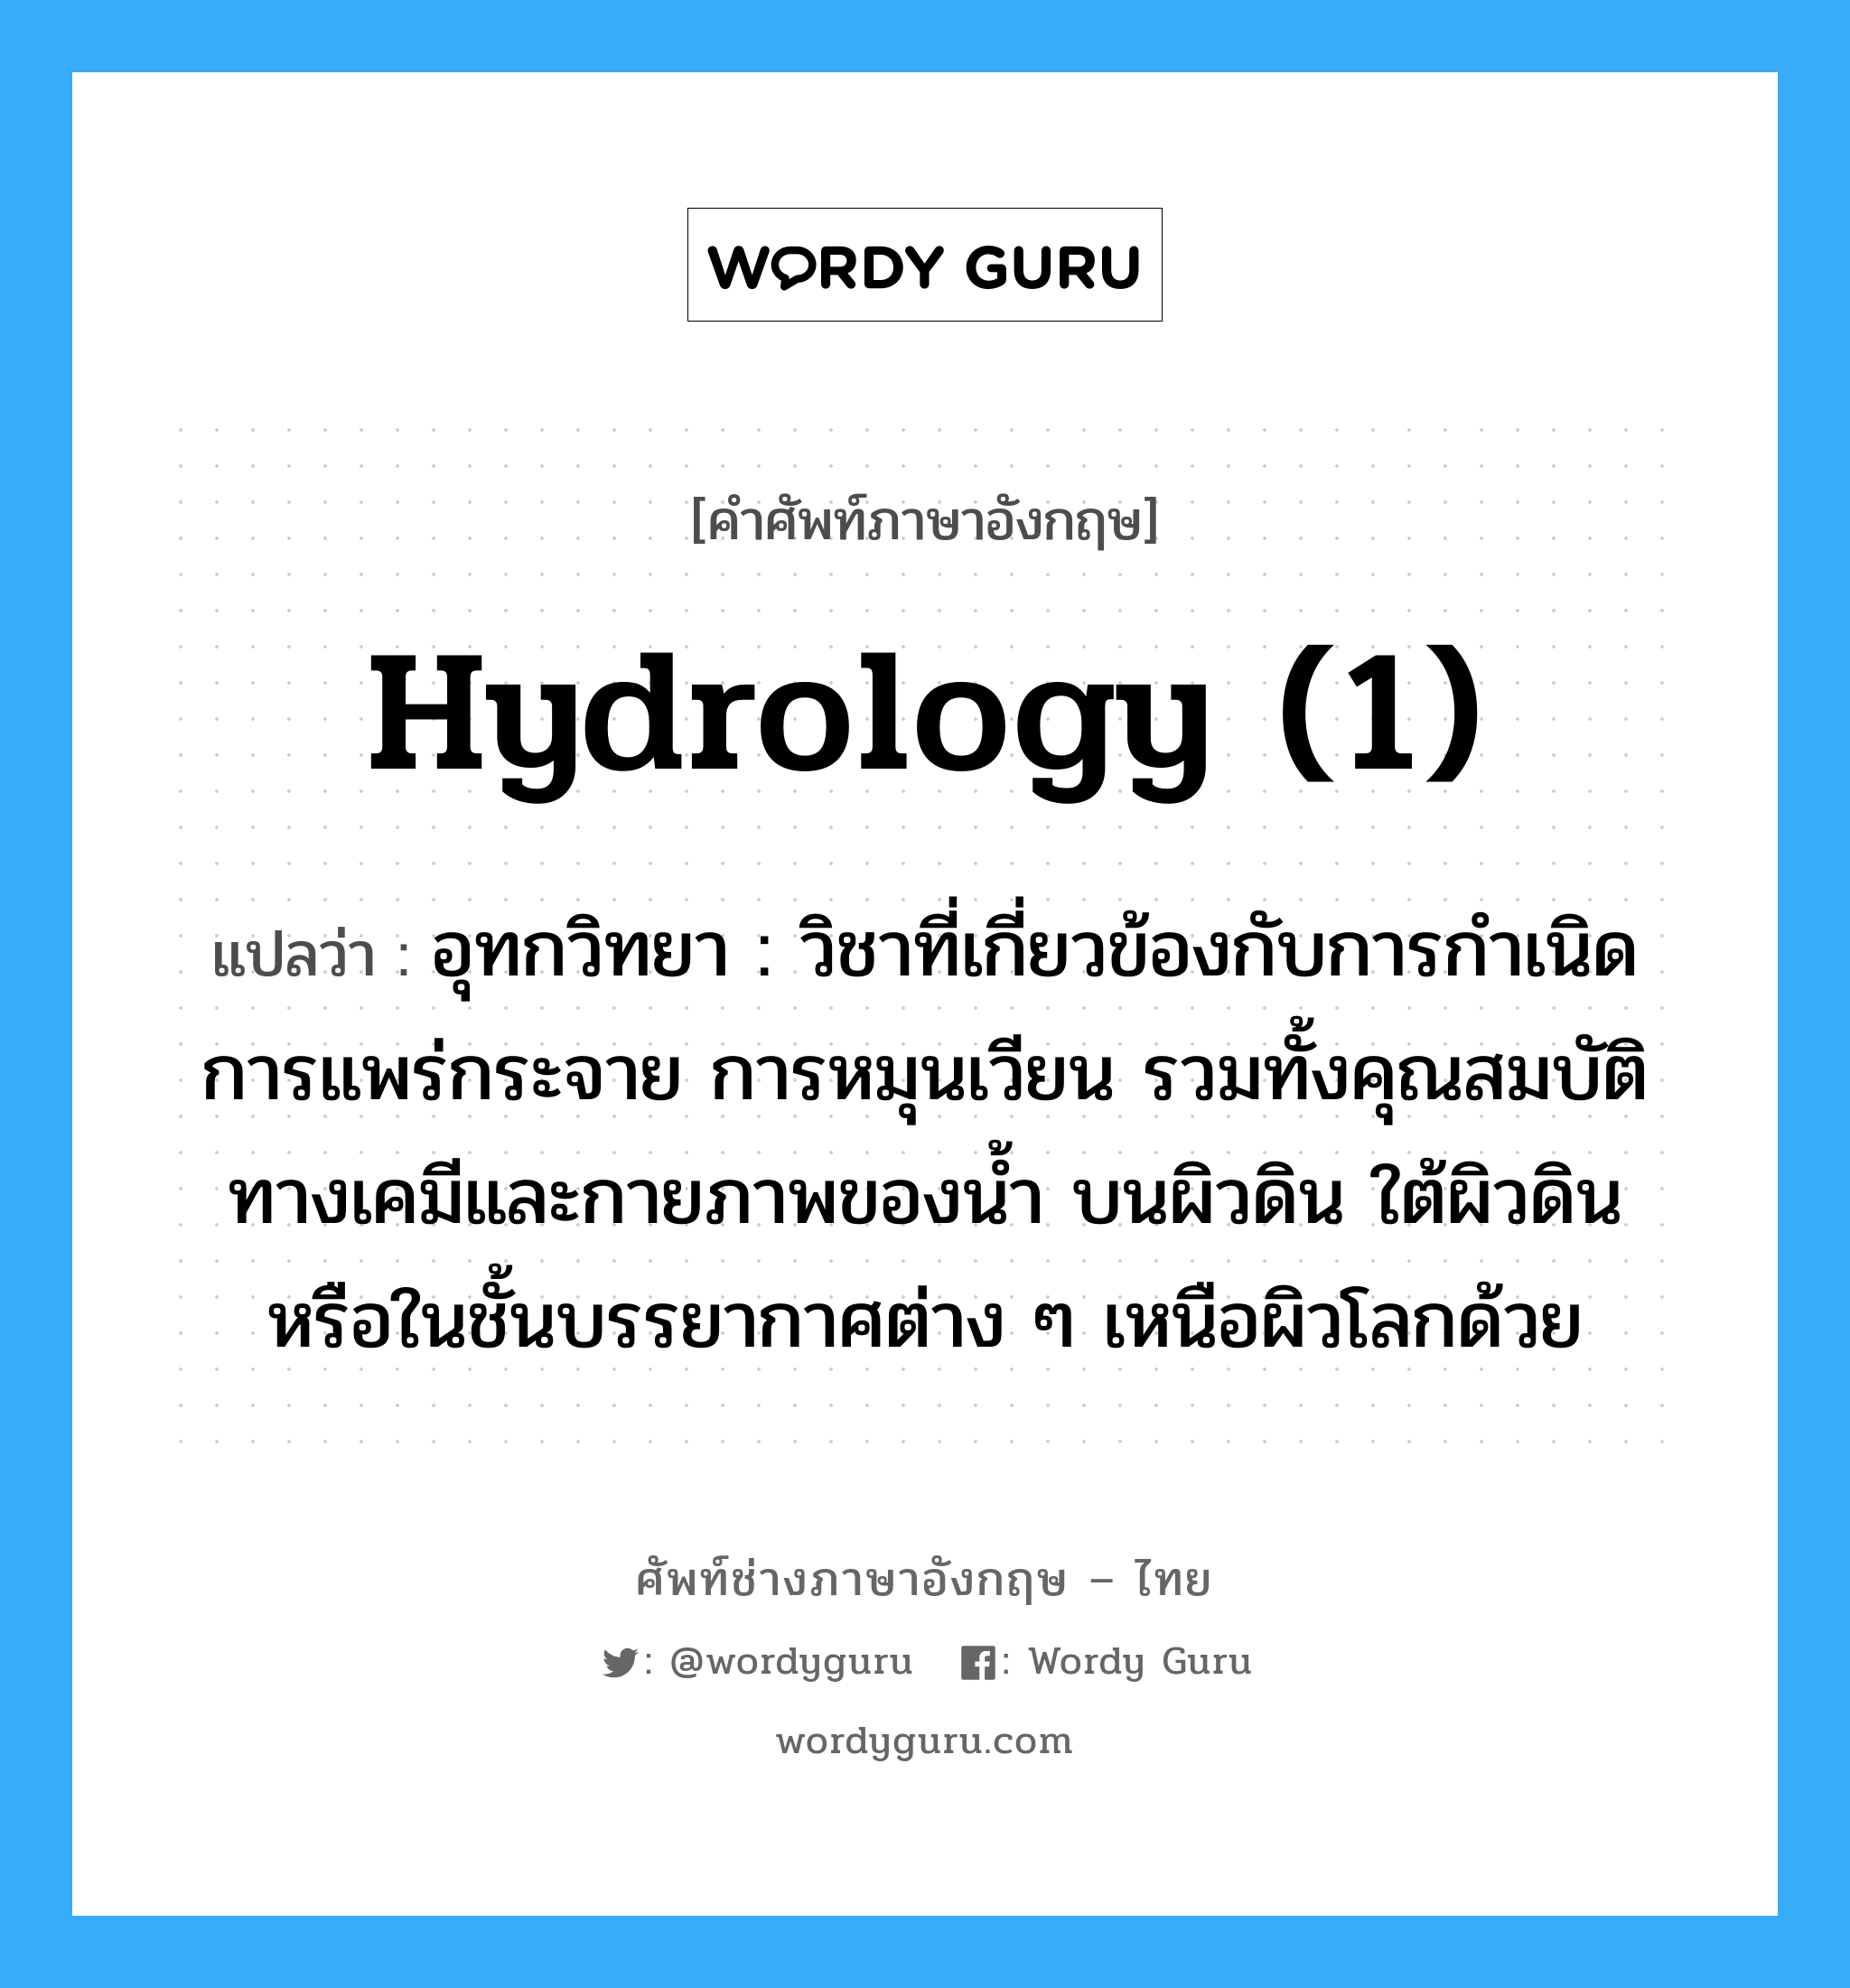 hydrology (1) แปลว่า?, คำศัพท์ช่างภาษาอังกฤษ - ไทย hydrology (1) คำศัพท์ภาษาอังกฤษ hydrology (1) แปลว่า อุทกวิทยา : วิชาที่เกี่ยวข้องกับการกำเนิด การแพร่กระจาย การหมุนเวียน รวมทั้งคุณสมบัติทางเคมีและกายภาพของน้ำ บนผิวดิน ใต้ผิวดิน หรือในชั้นบรรยากาศต่าง ๆ เหนือผิวโลกด้วย